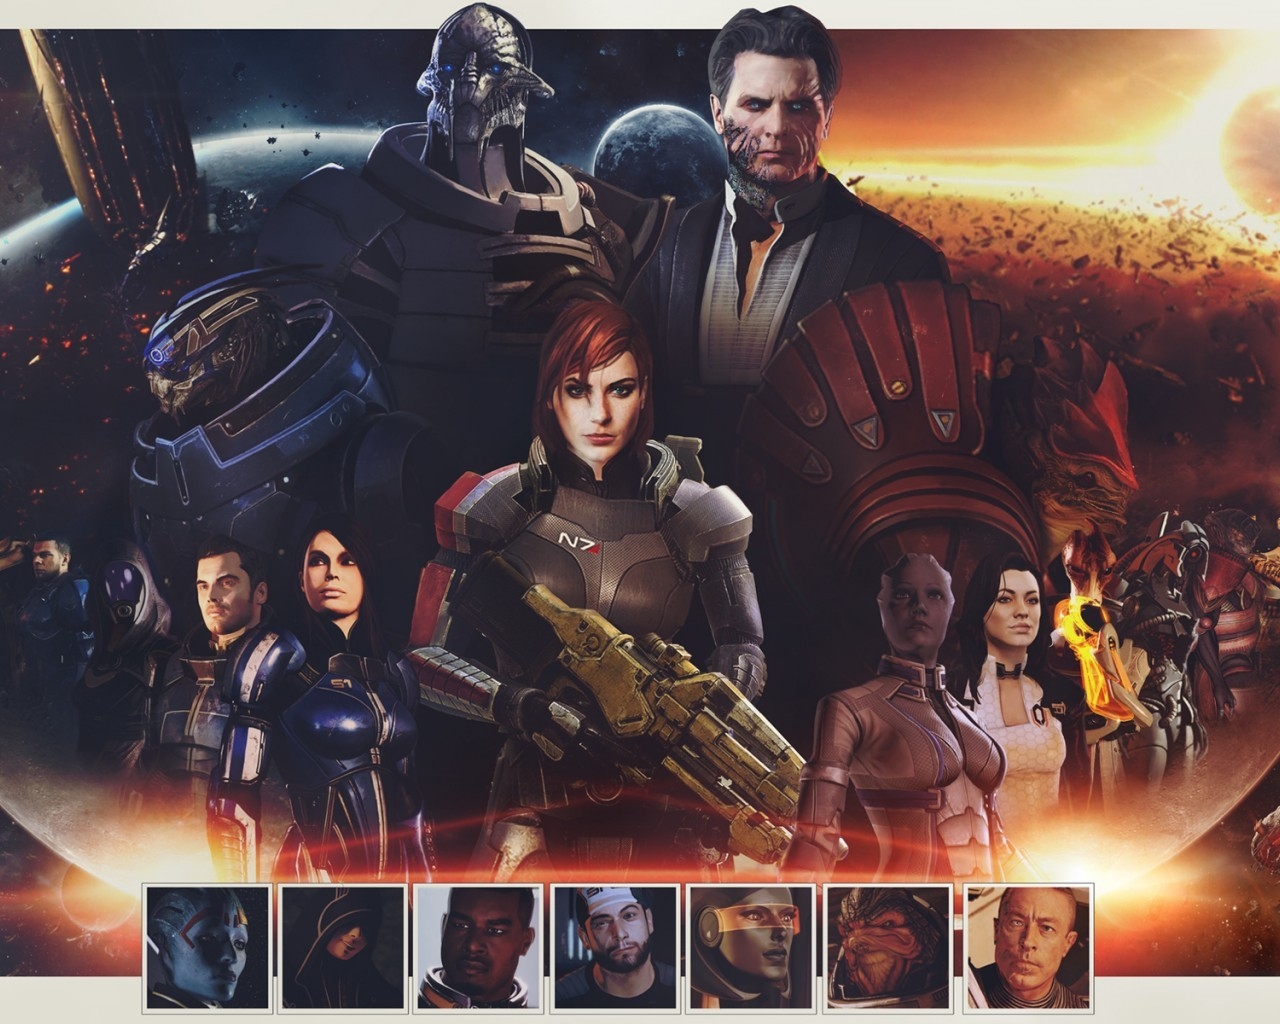 Mass Effect Zaeed Massani for 1280 x 1024 resolution